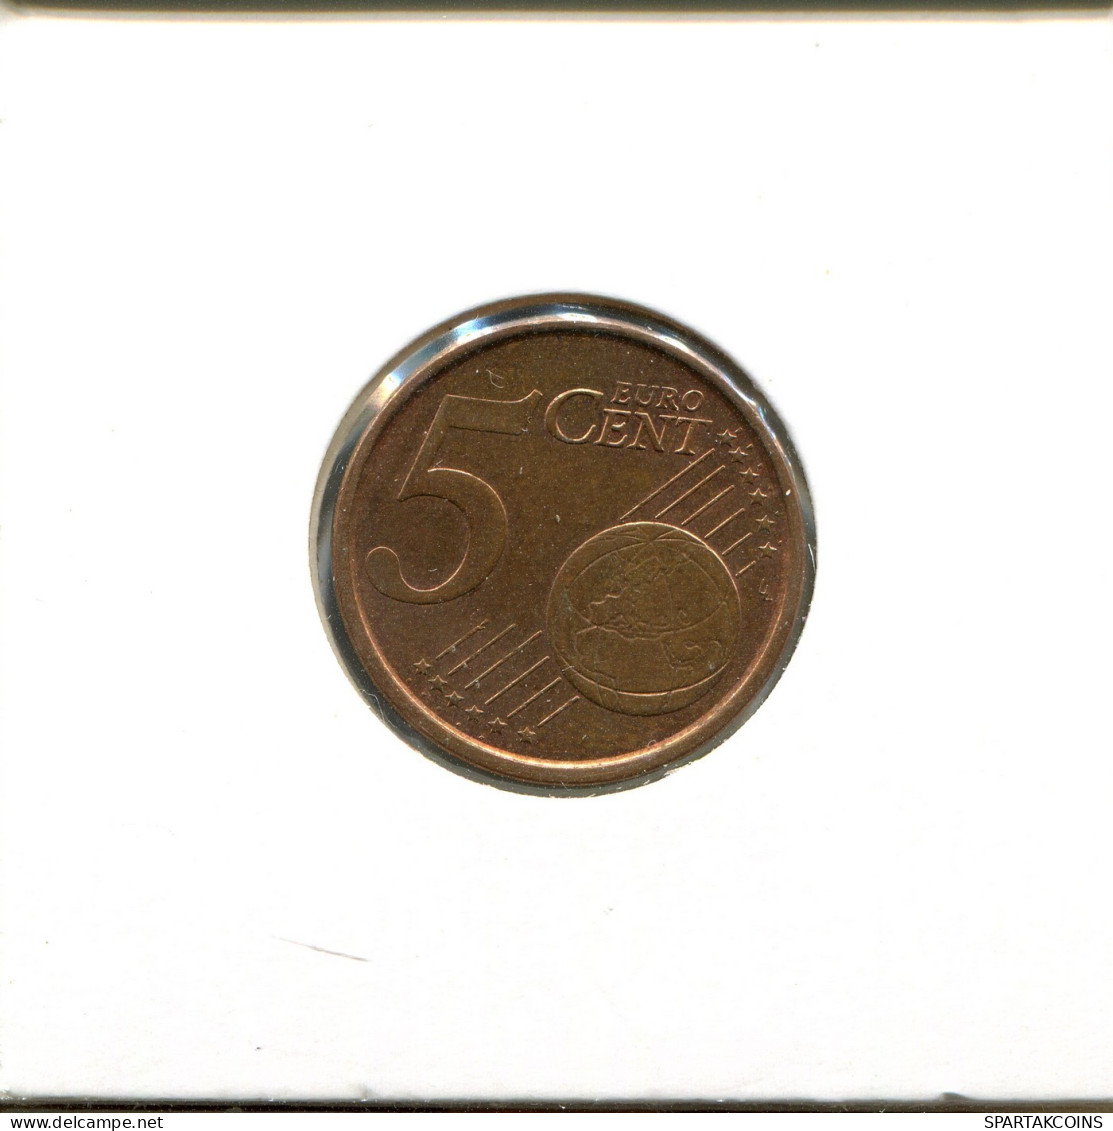 5 EURO CENTS 2005 SPAIN Coin #EU568.U.A - Spain